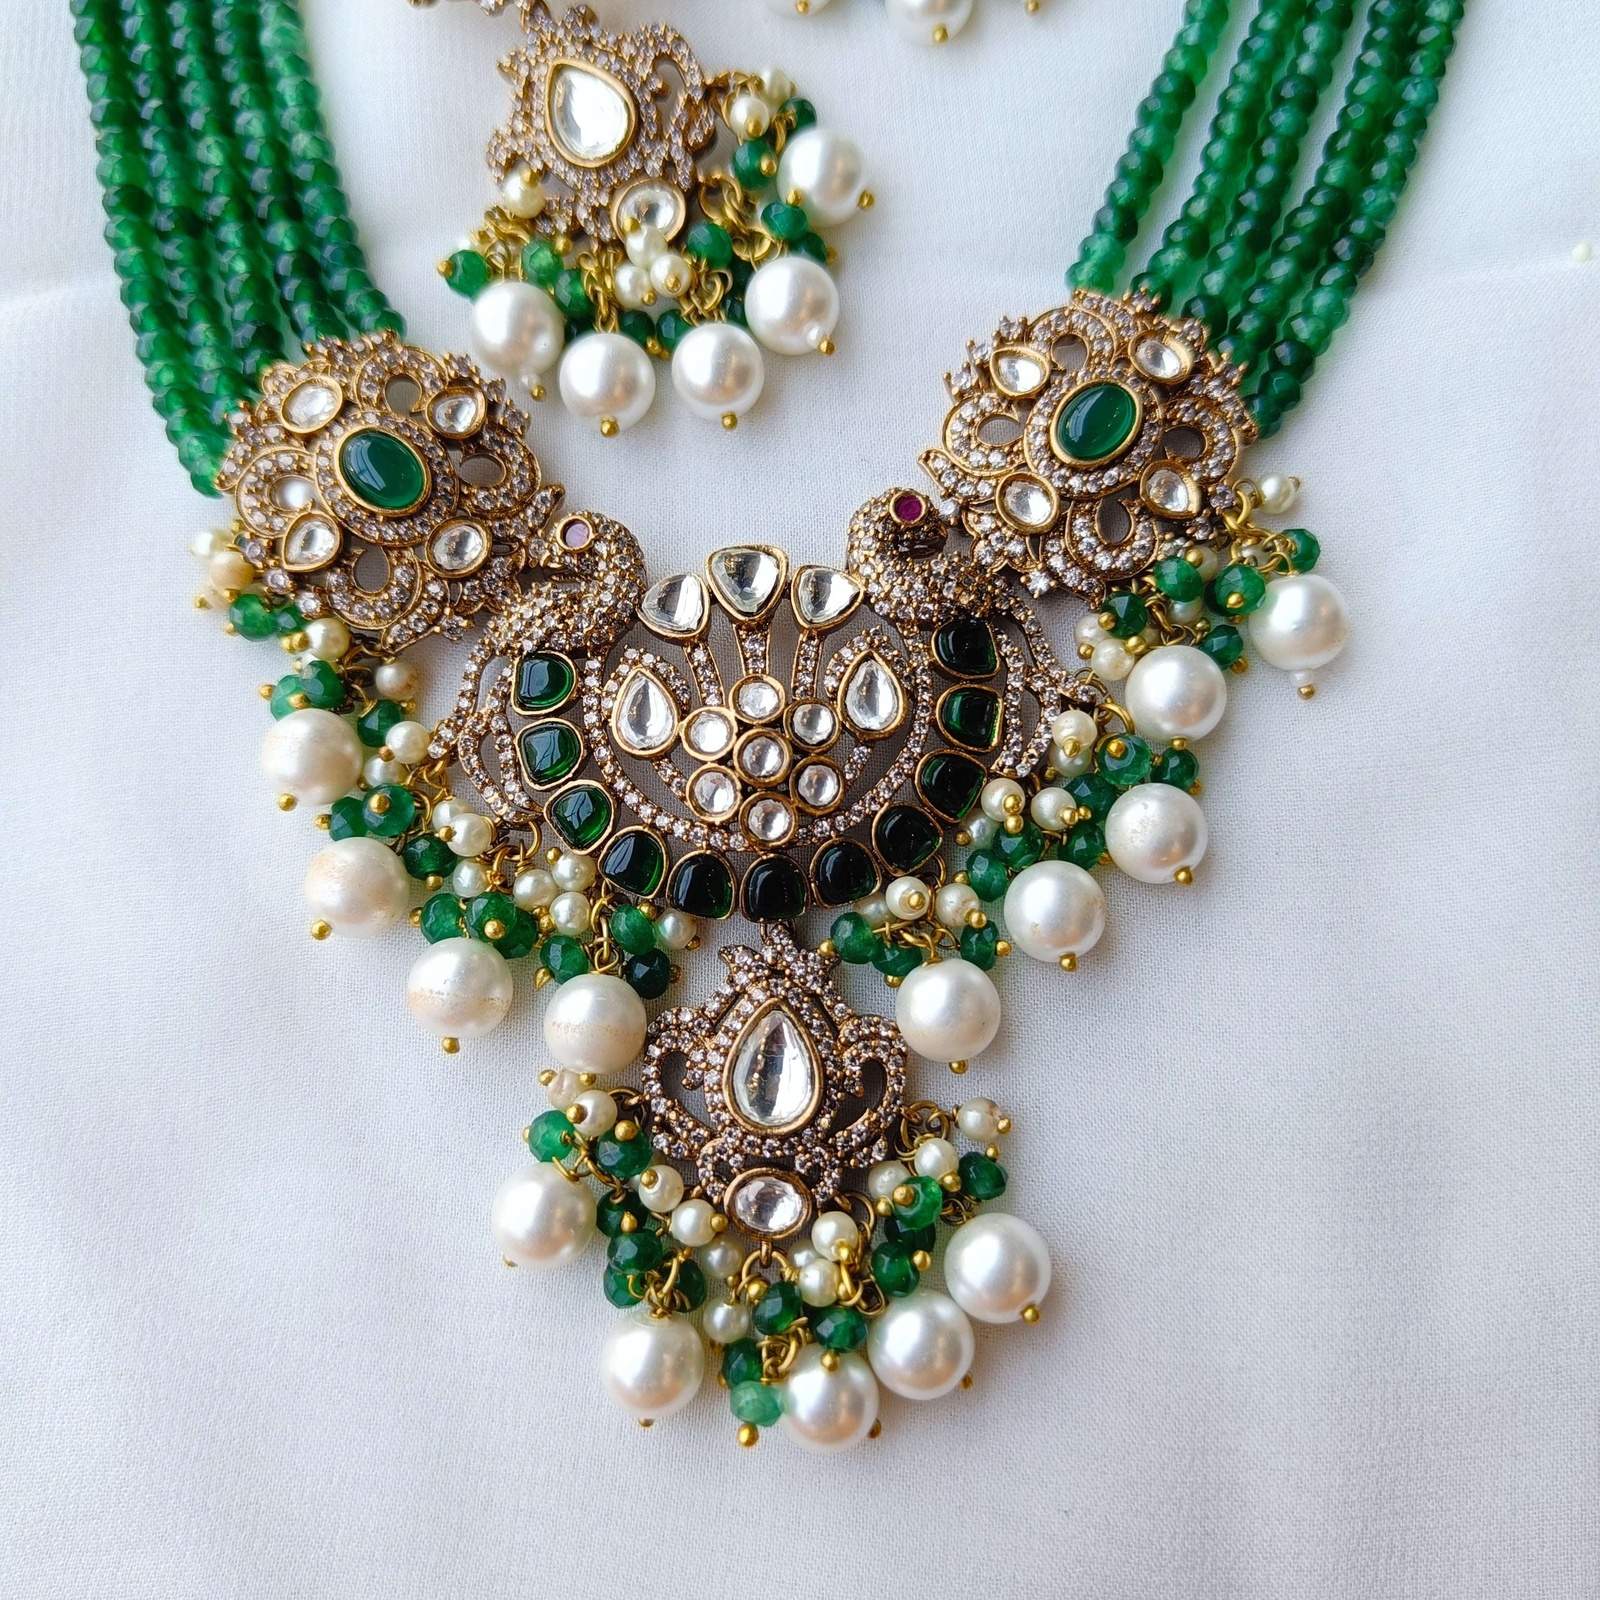 Nayaab Hira neckpiece